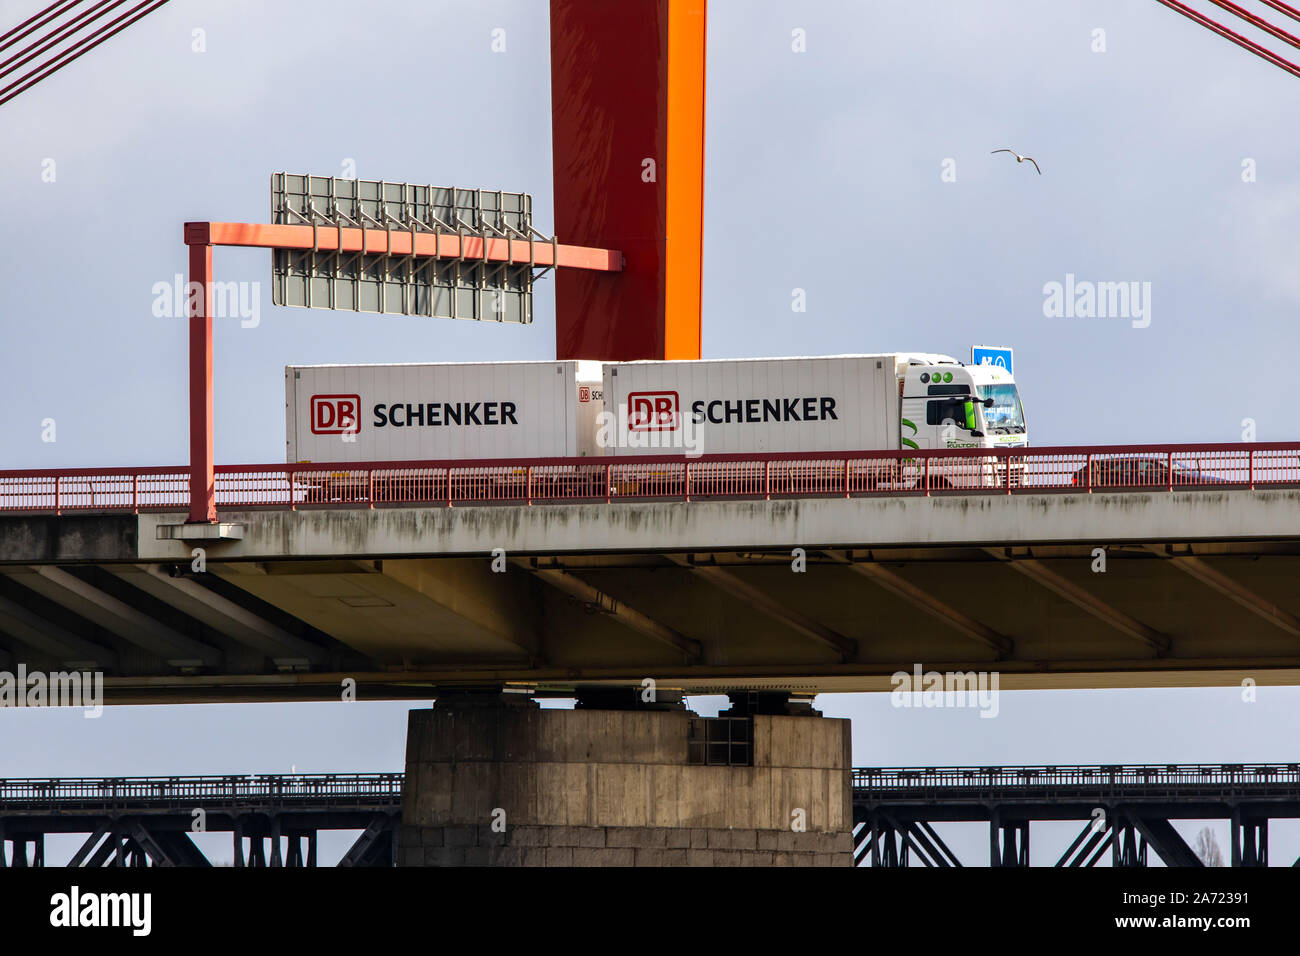 Brücke über den Rhein bei Duisburg, Brücke auf der Autobahn A42, eisenbahnbrücke an der Rückseite, DB Schenker Logistik, Deutschland Stockfoto